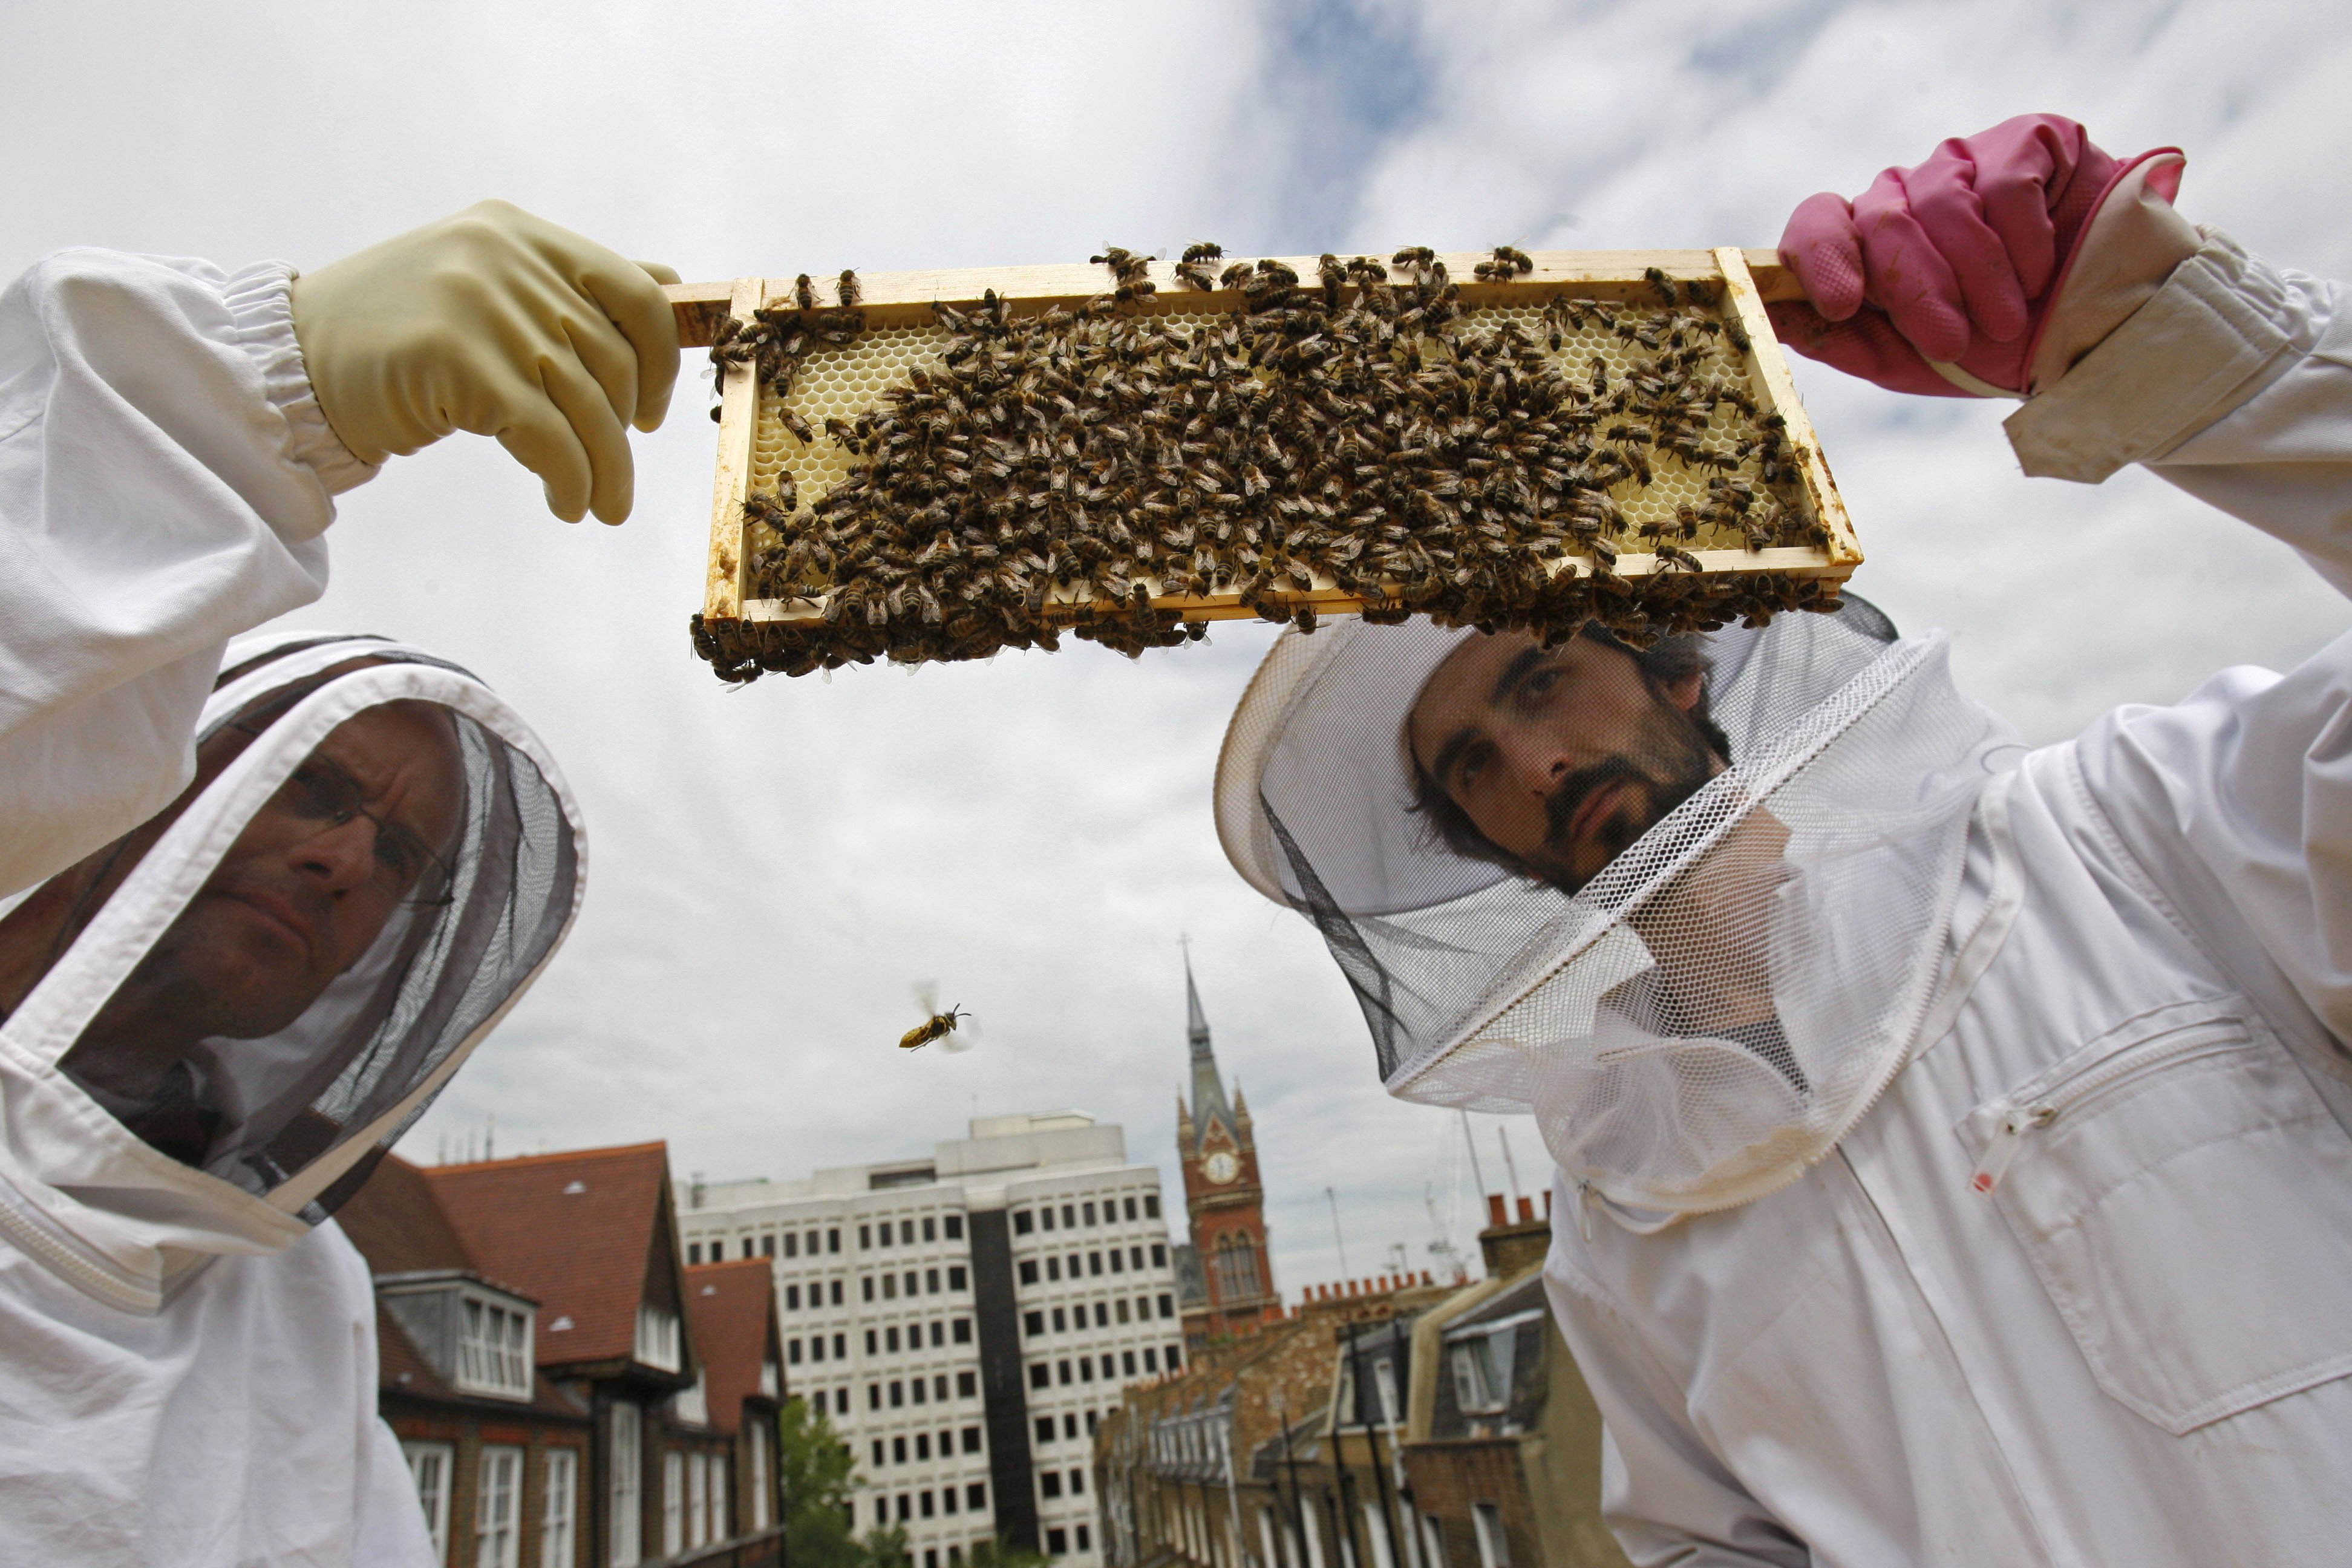 100 000 bin är ingen tebjudning. Inte ens att jämföra med en kunglig tebjudning.